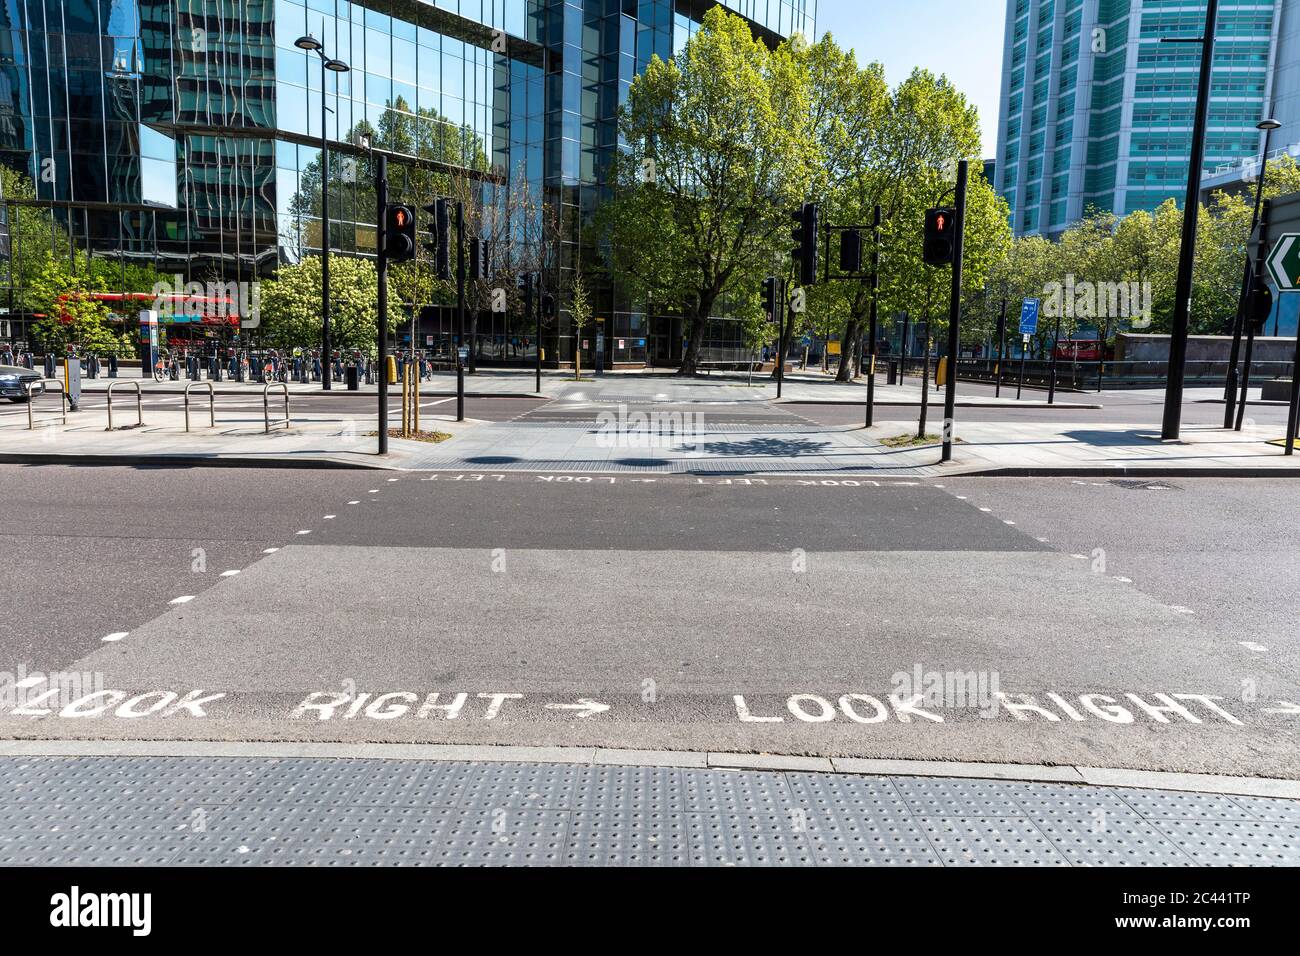 Regno Unito, Londra, attraversamento pedonale e via vuota vicino a piazza Euston durante il coprifuoco Foto Stock